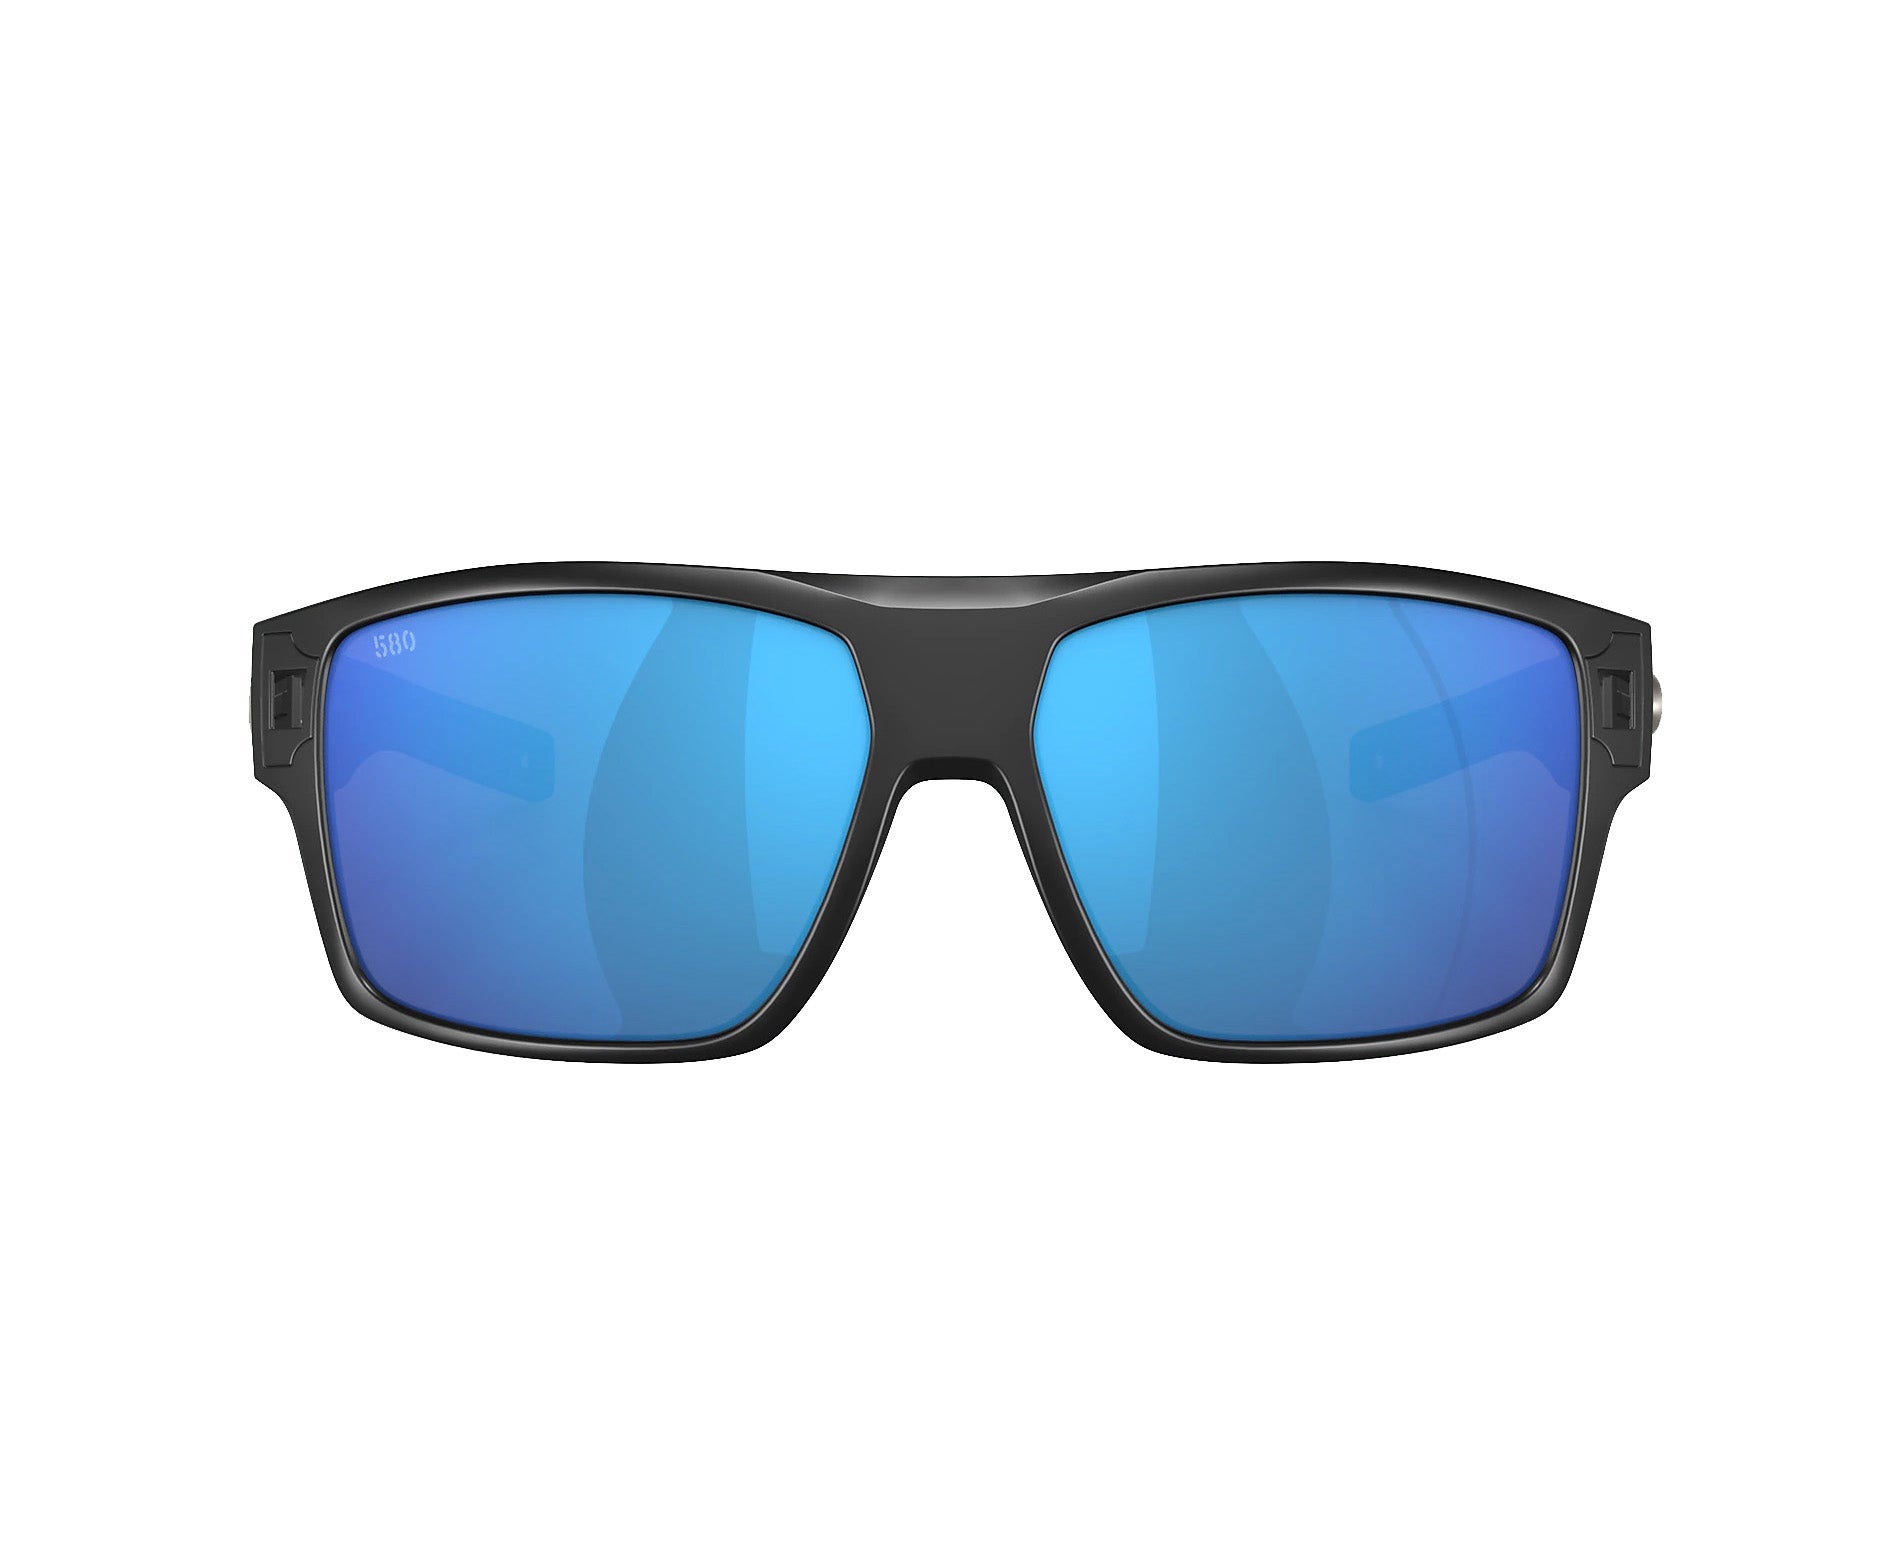 Costa Del Mar Diego Polarized Sunglasses  MatteBlack BlueMirror 580G